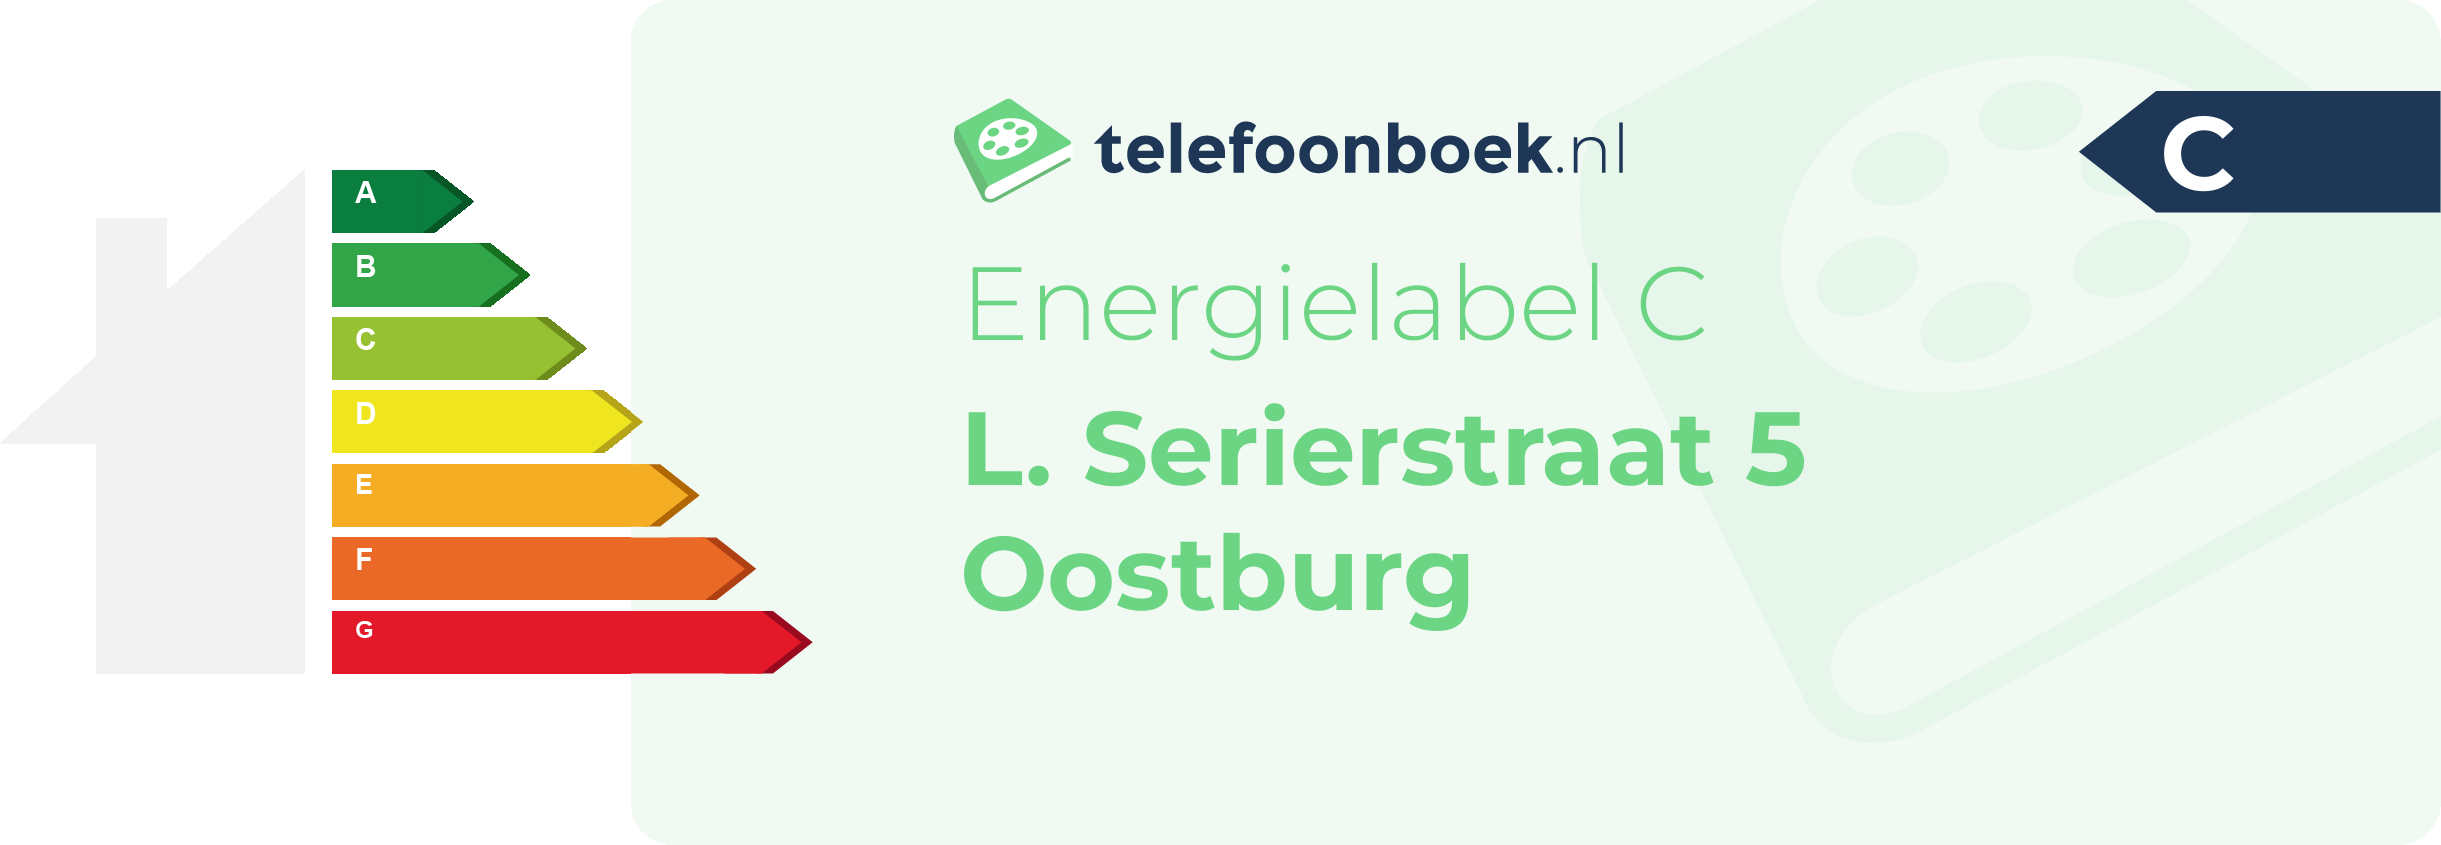 Energielabel L. Serierstraat 5 Oostburg